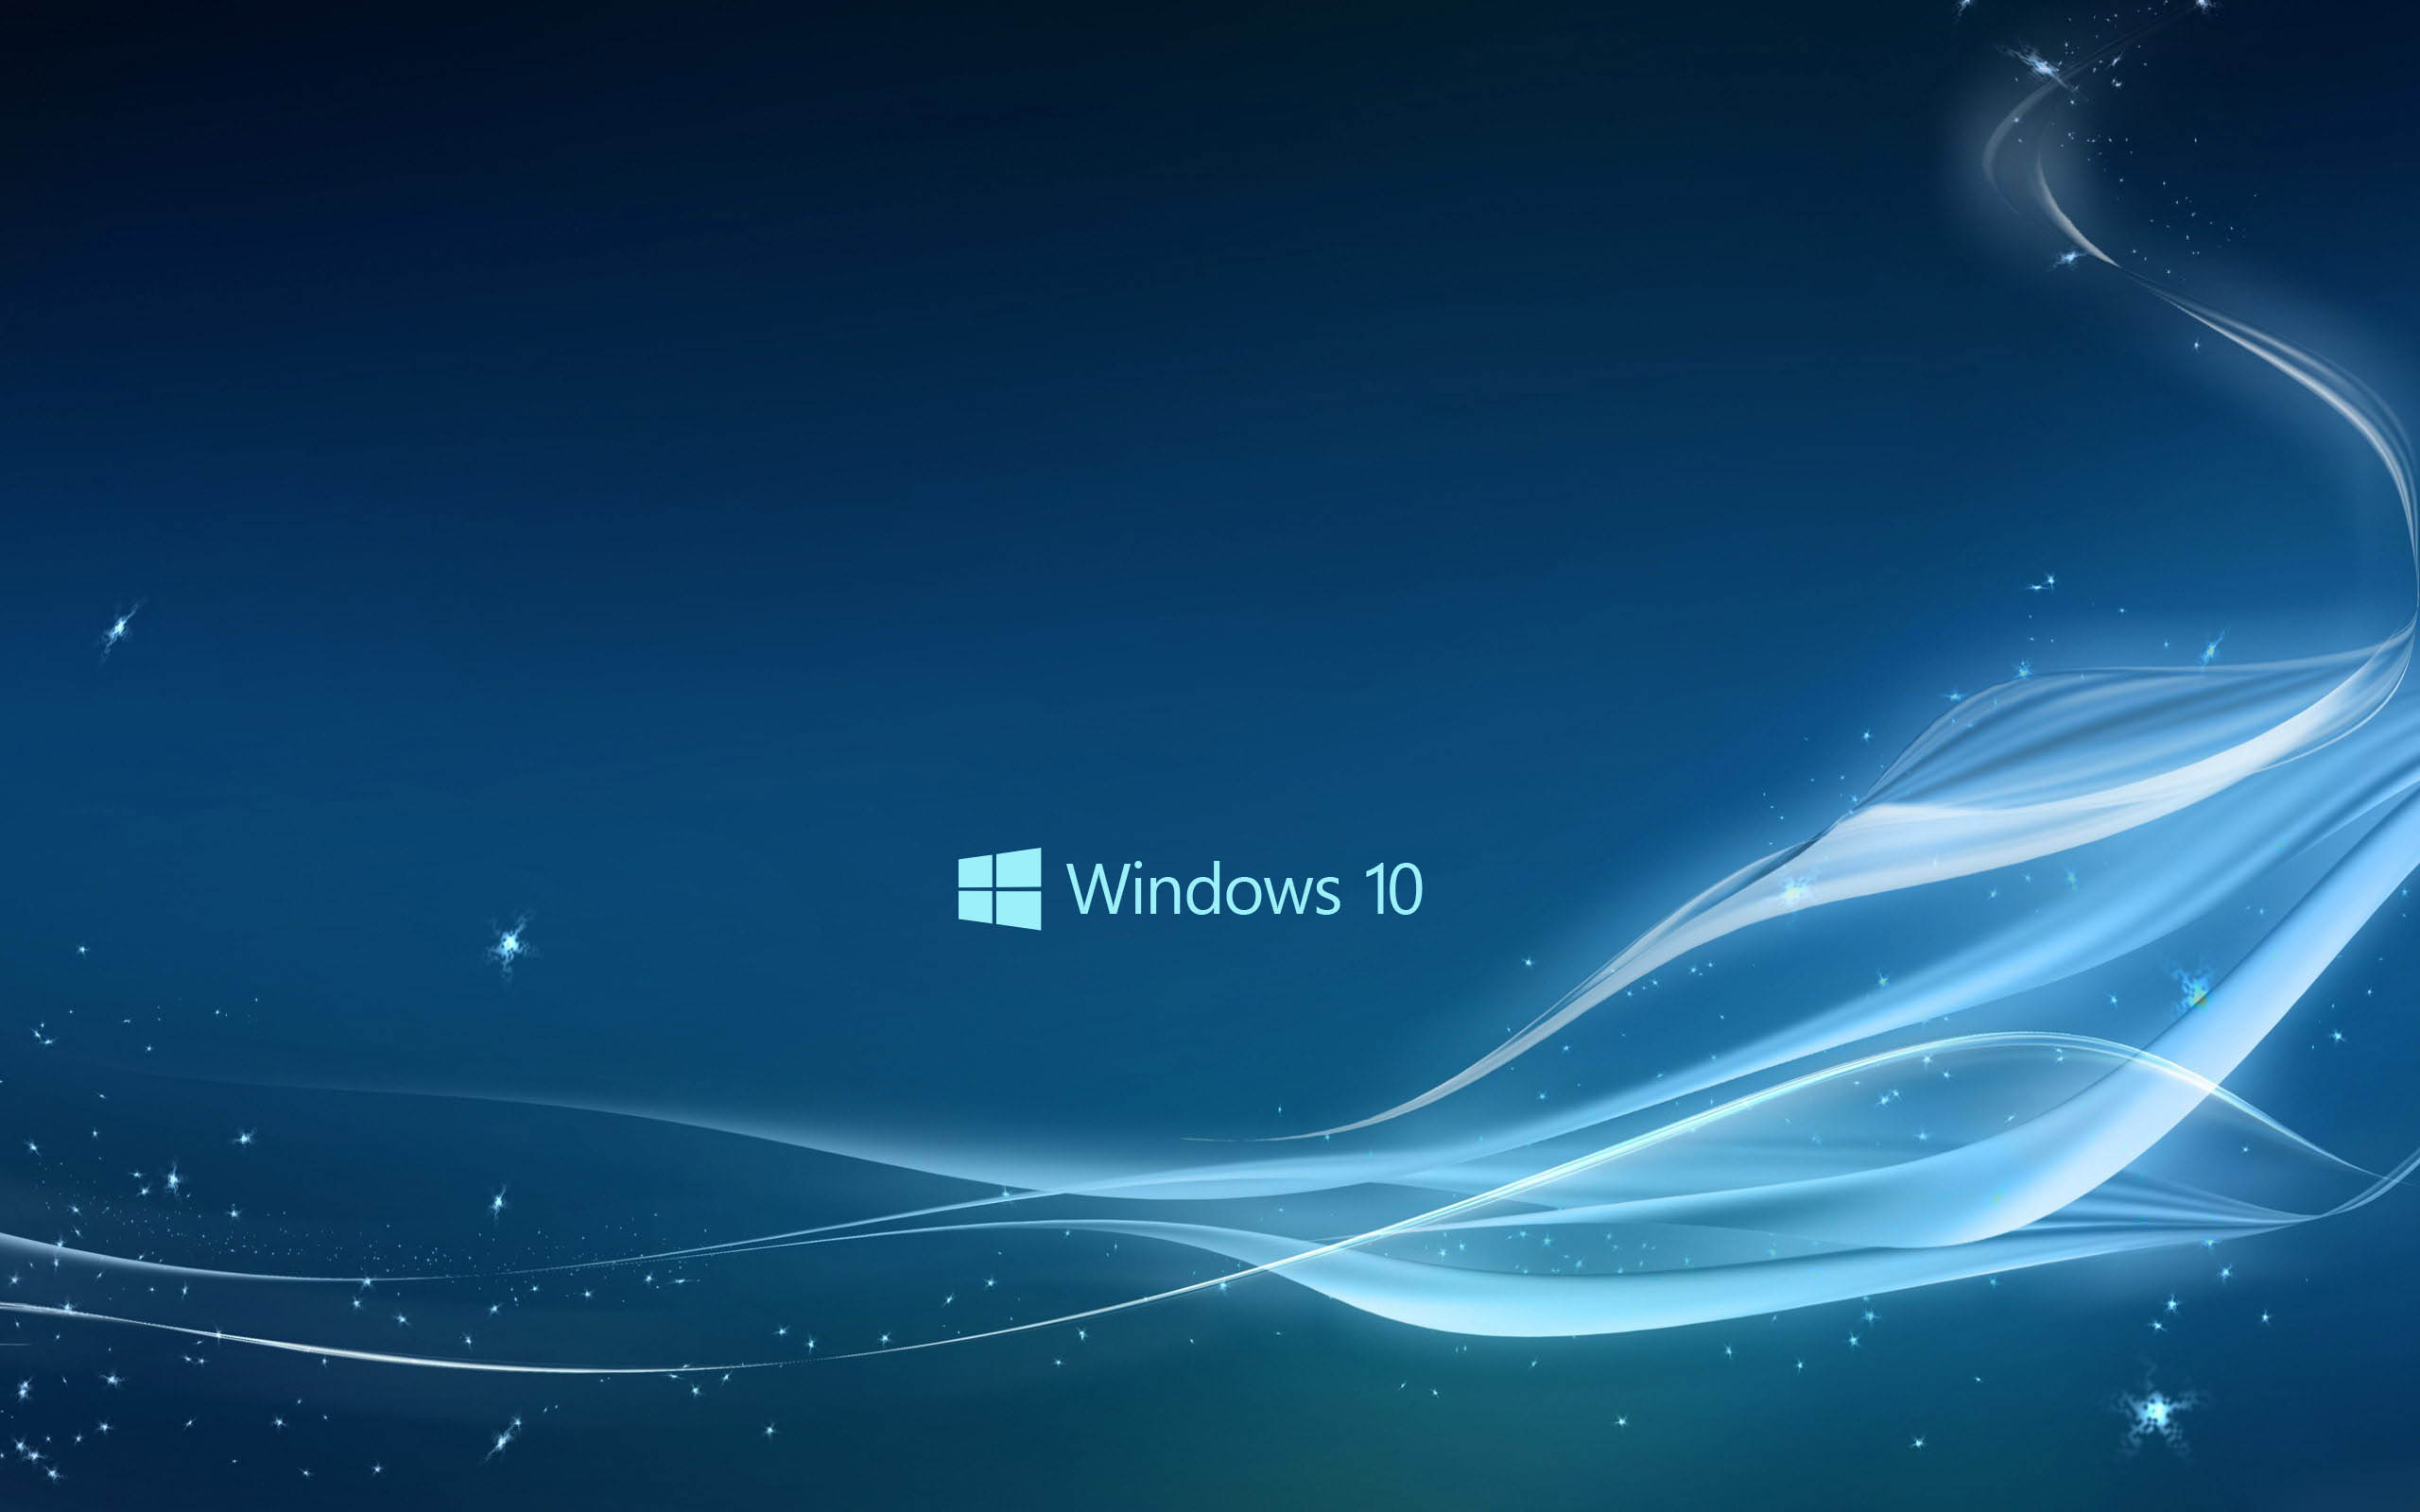 Hình nền Windows 10 này làm cho máy tính của bạn trở nên ngập tràn sắc màu và sống động hơn bao giờ hết! Từ những khung cảnh thiên nhiên đến những hình ảnh trừu tượng abstrac, Windows 10 có tất cả những gì bạn cần để trang trí màn hình desktop của mình.